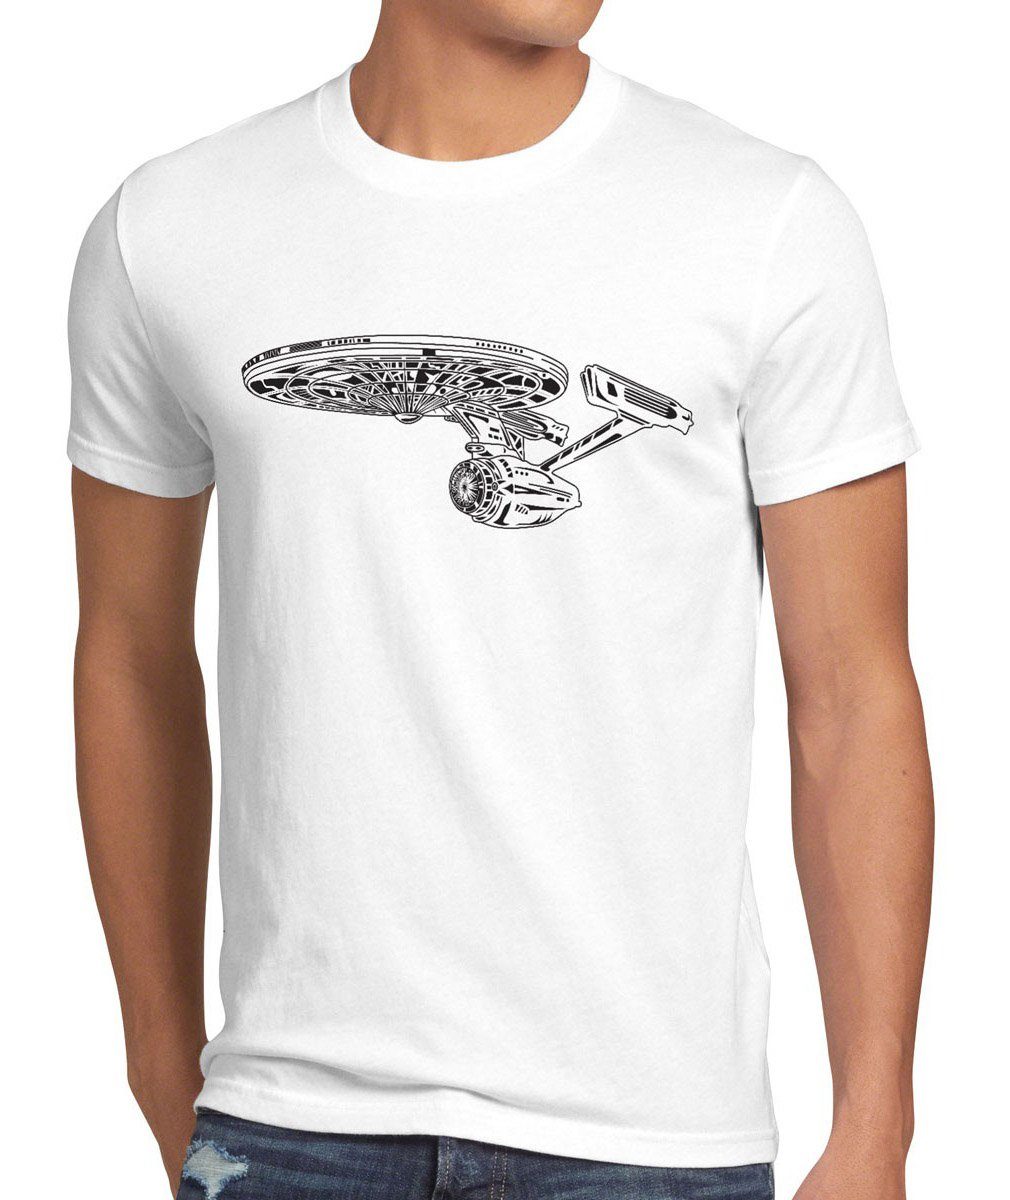 raumschiff spock Sci-Fi Trekkie trek voyager wars weiß Herren style3 enterprise T-Shirt star Print-Shirt